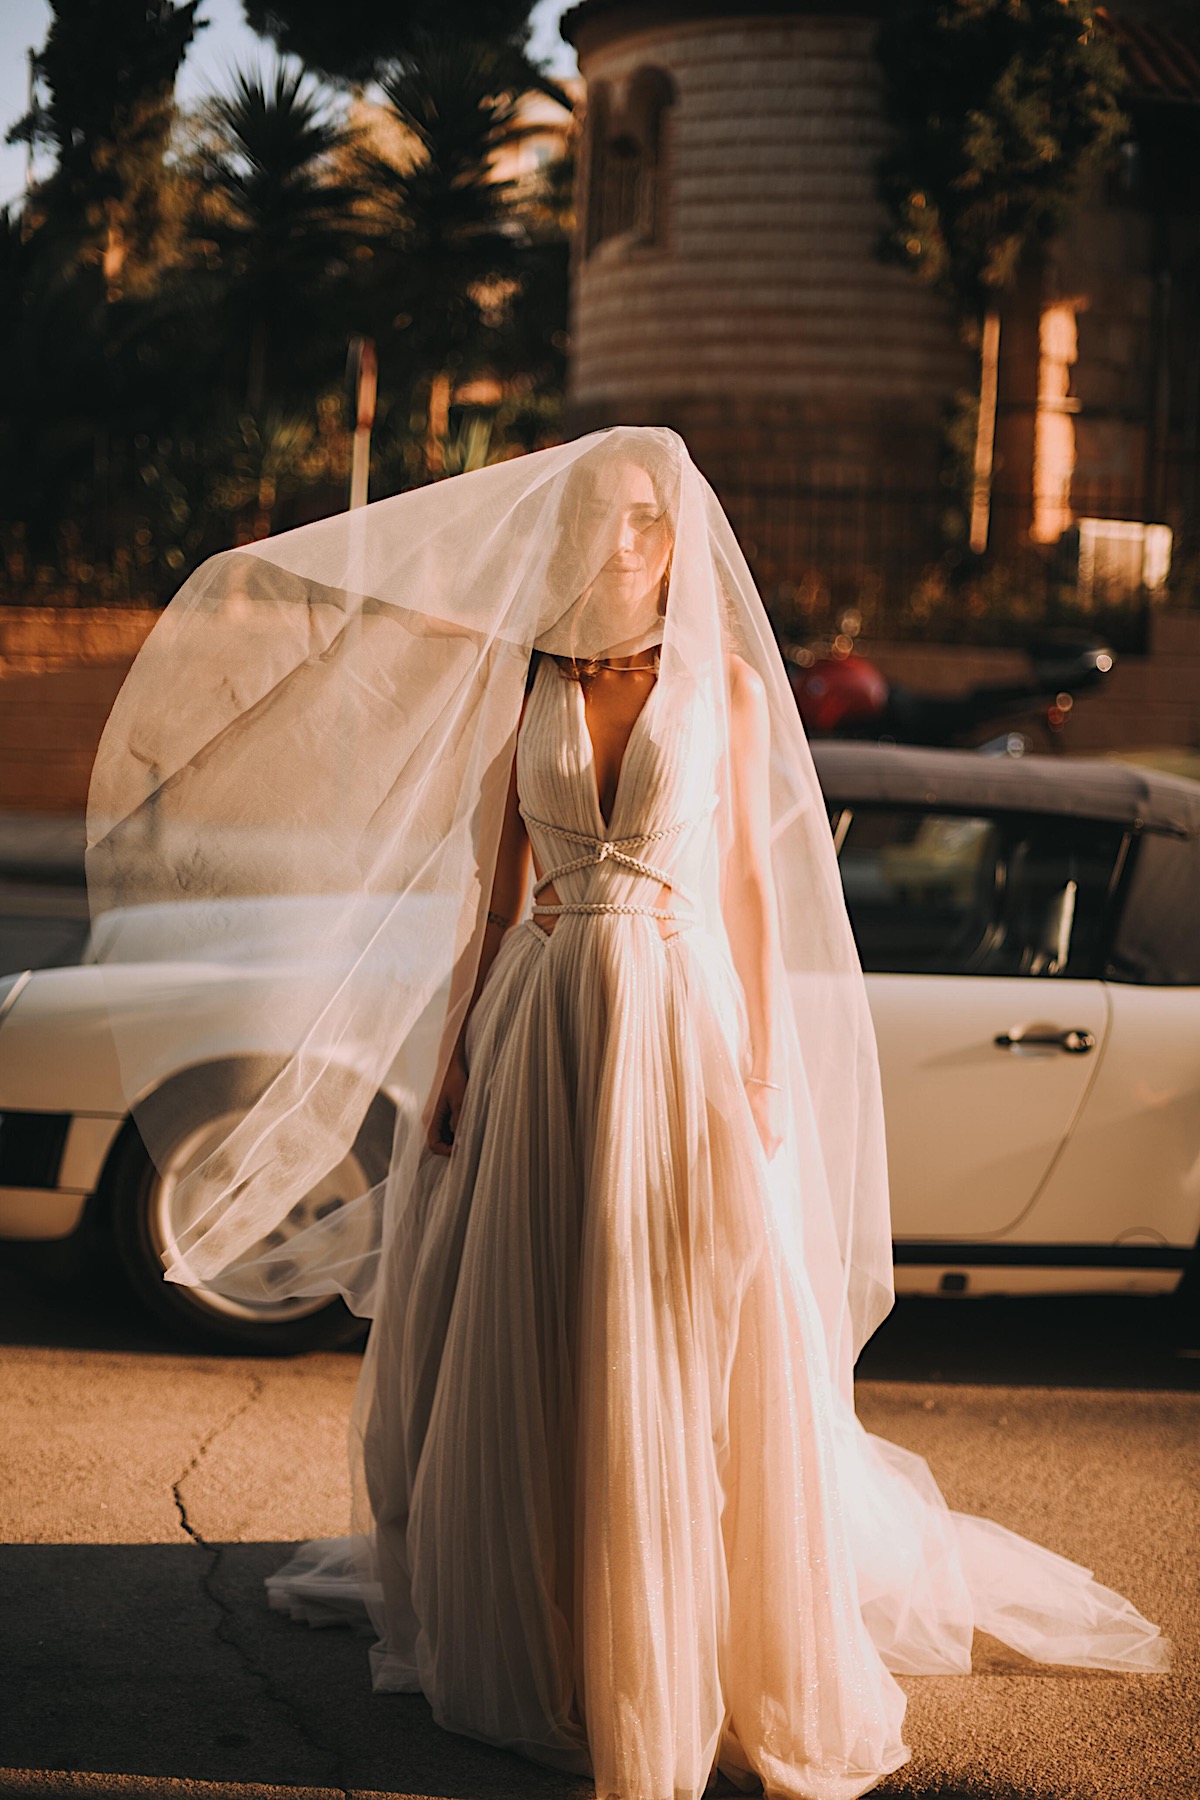 Moody destination wedding bride in Greece with vintage car